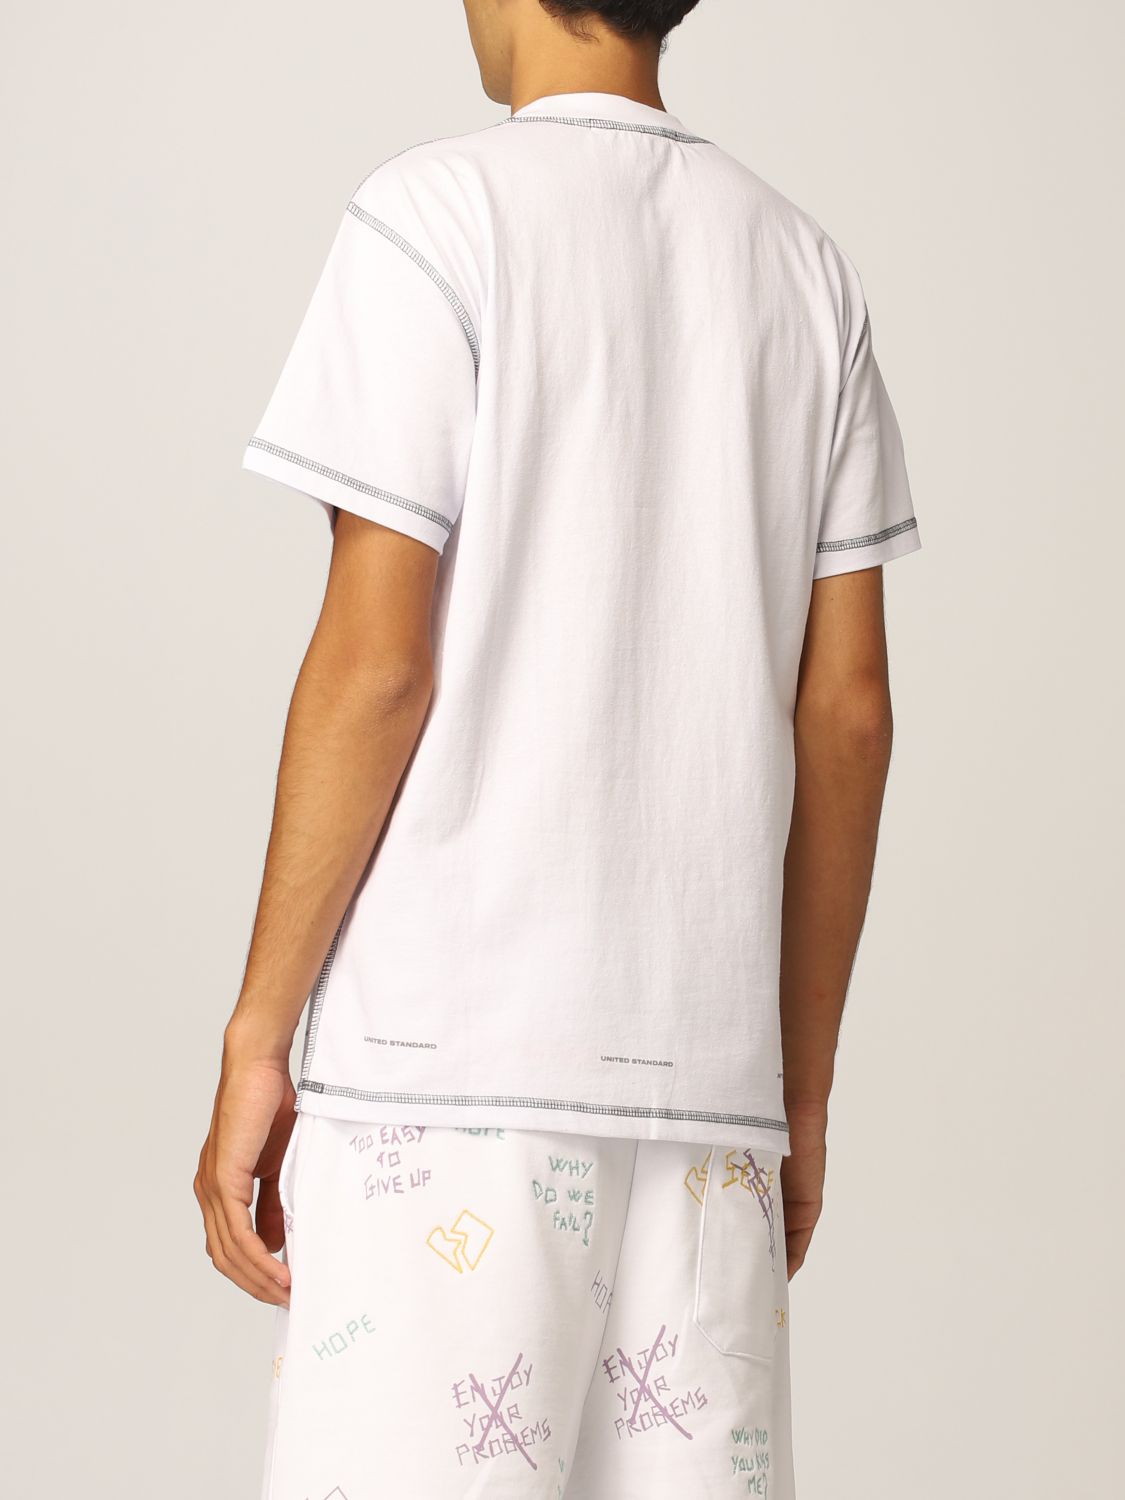 T-shirt United Standard: United Standard t-shirt for men white 2